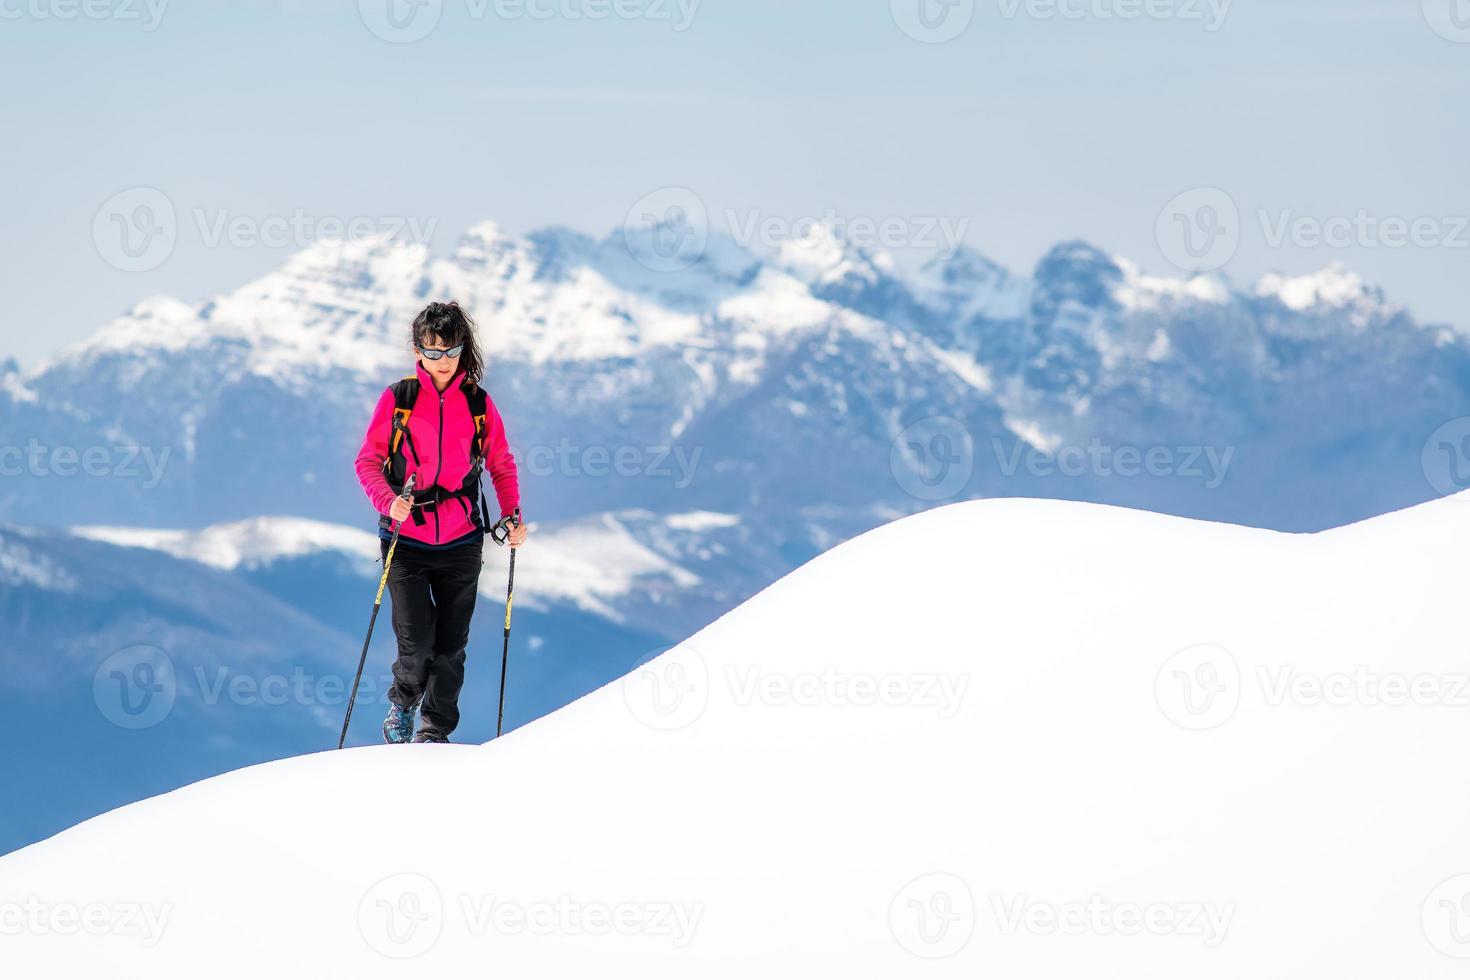 jovem no cume de tanta neve sobe em direção ao topo nas montanhas foto